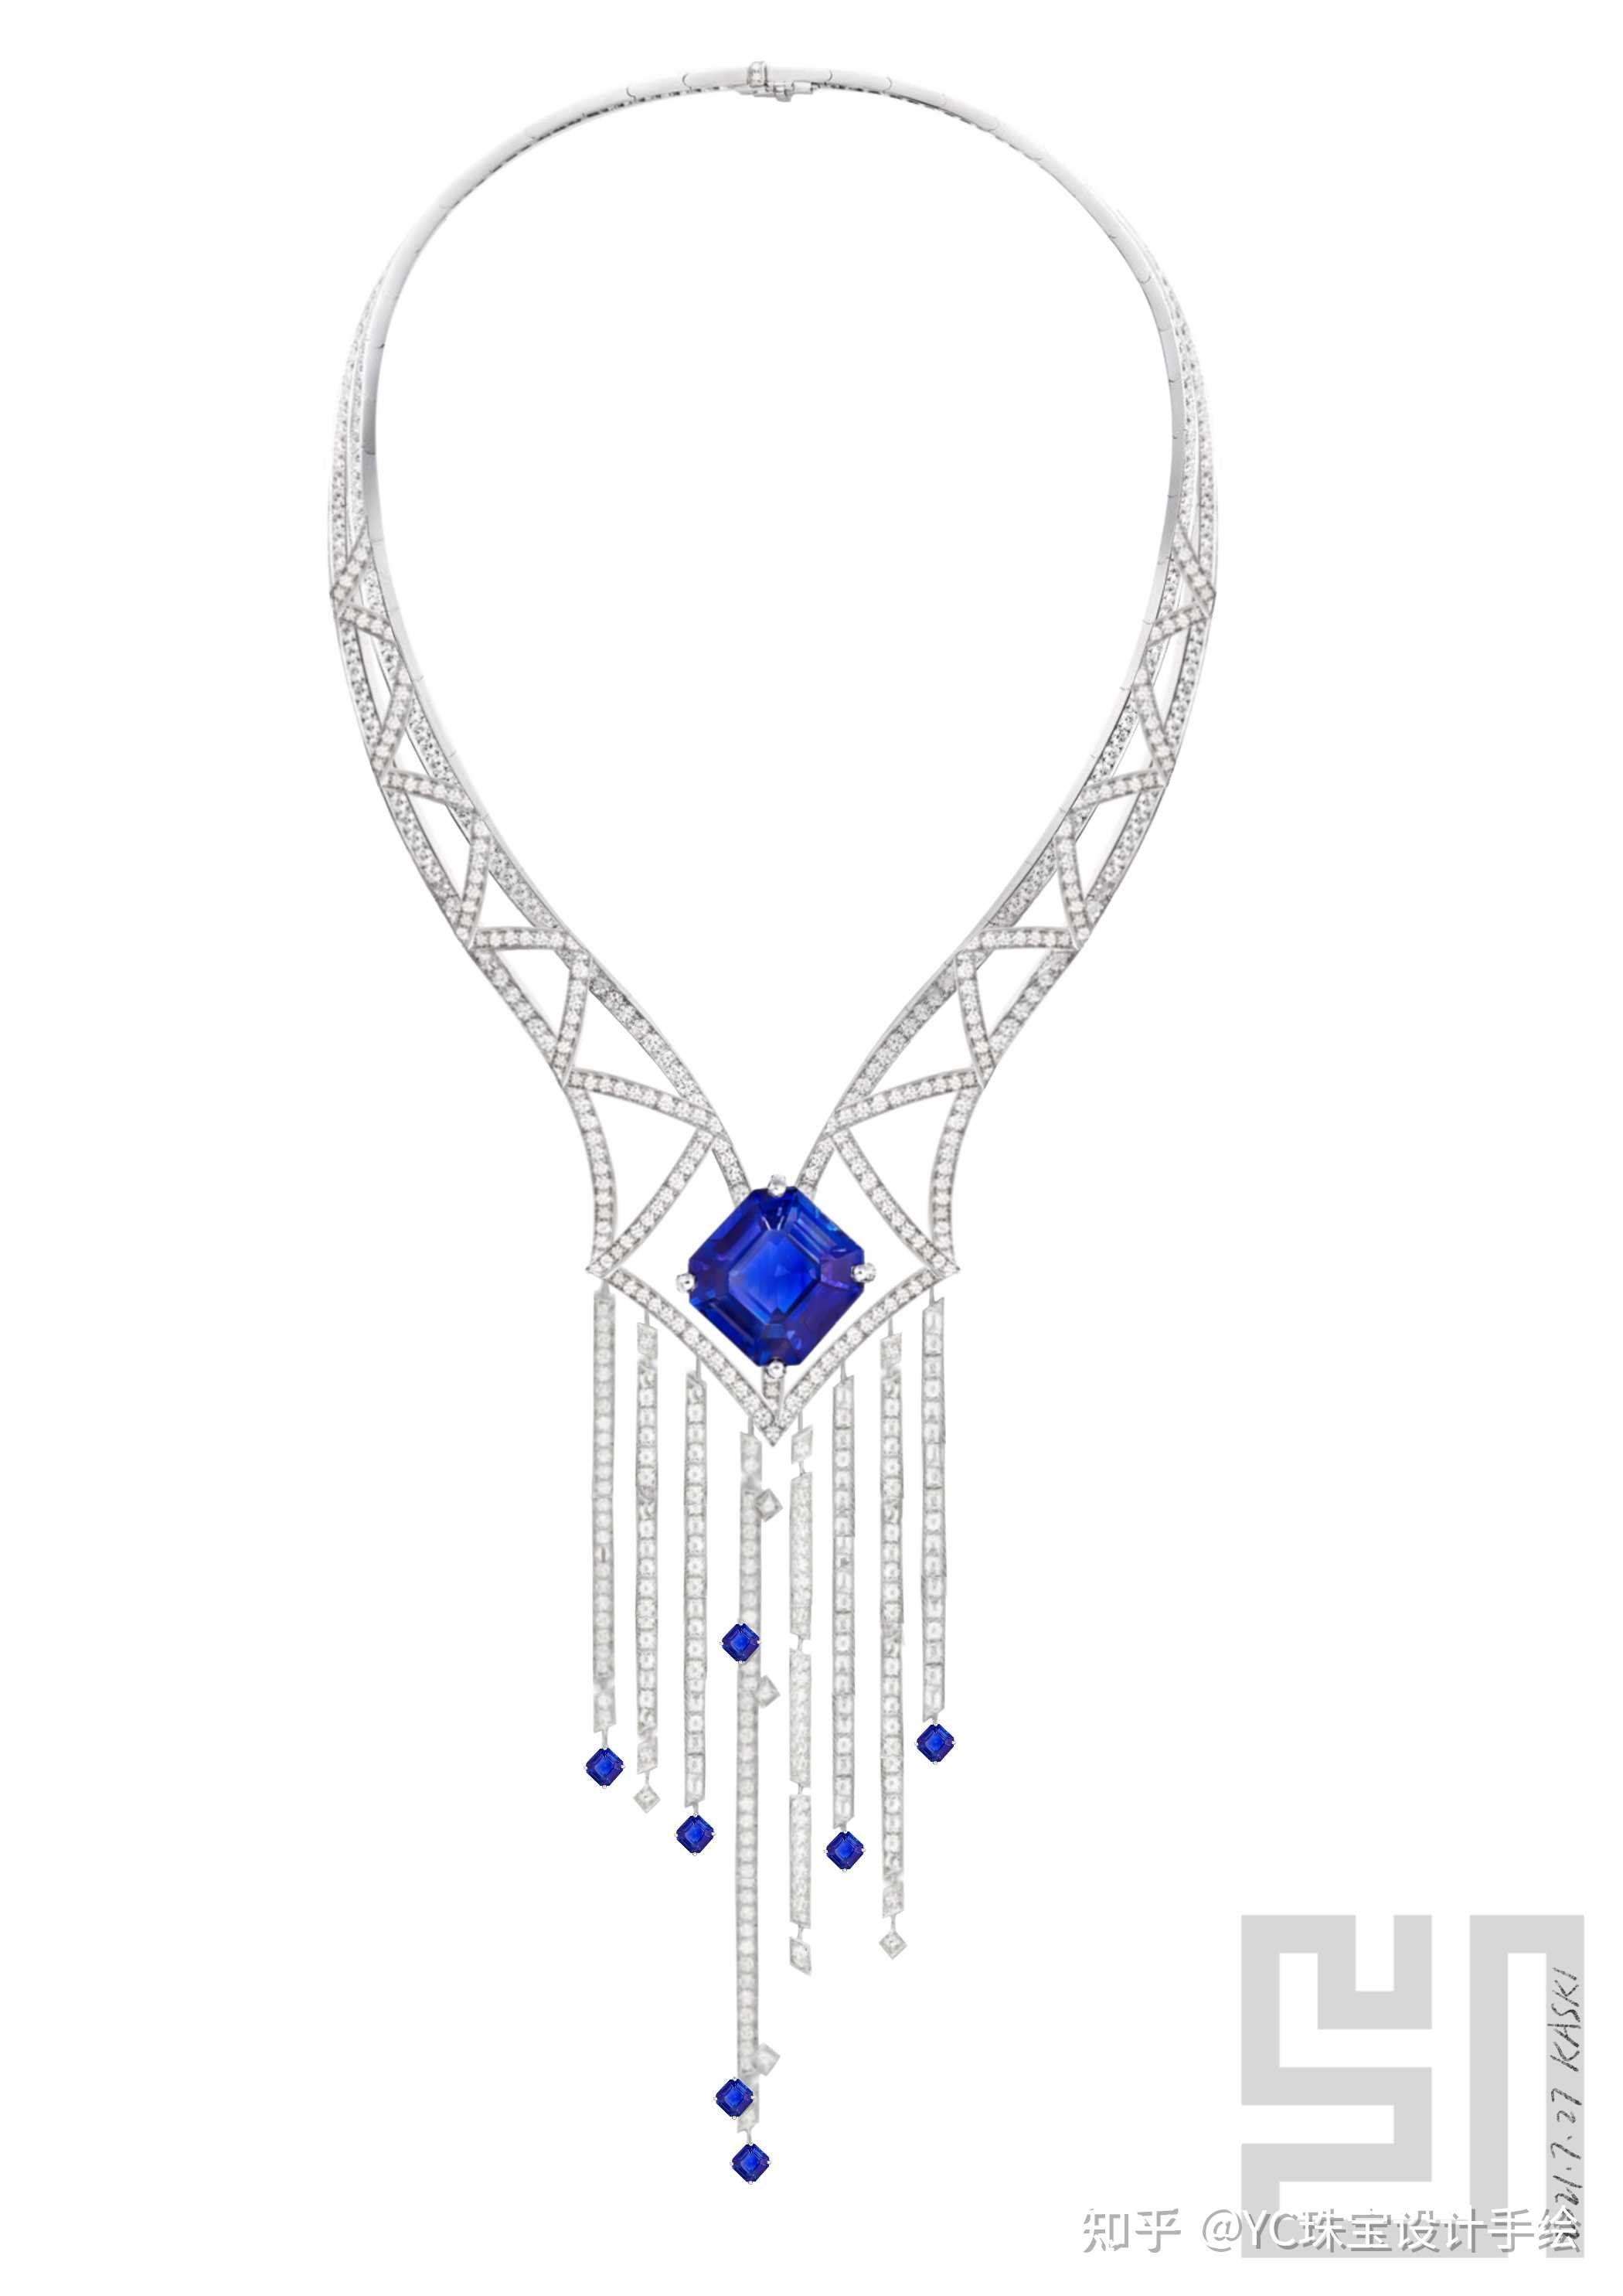 yc珠宝设计手绘 的想法 子子海 项链设计#珠宝设计 知乎